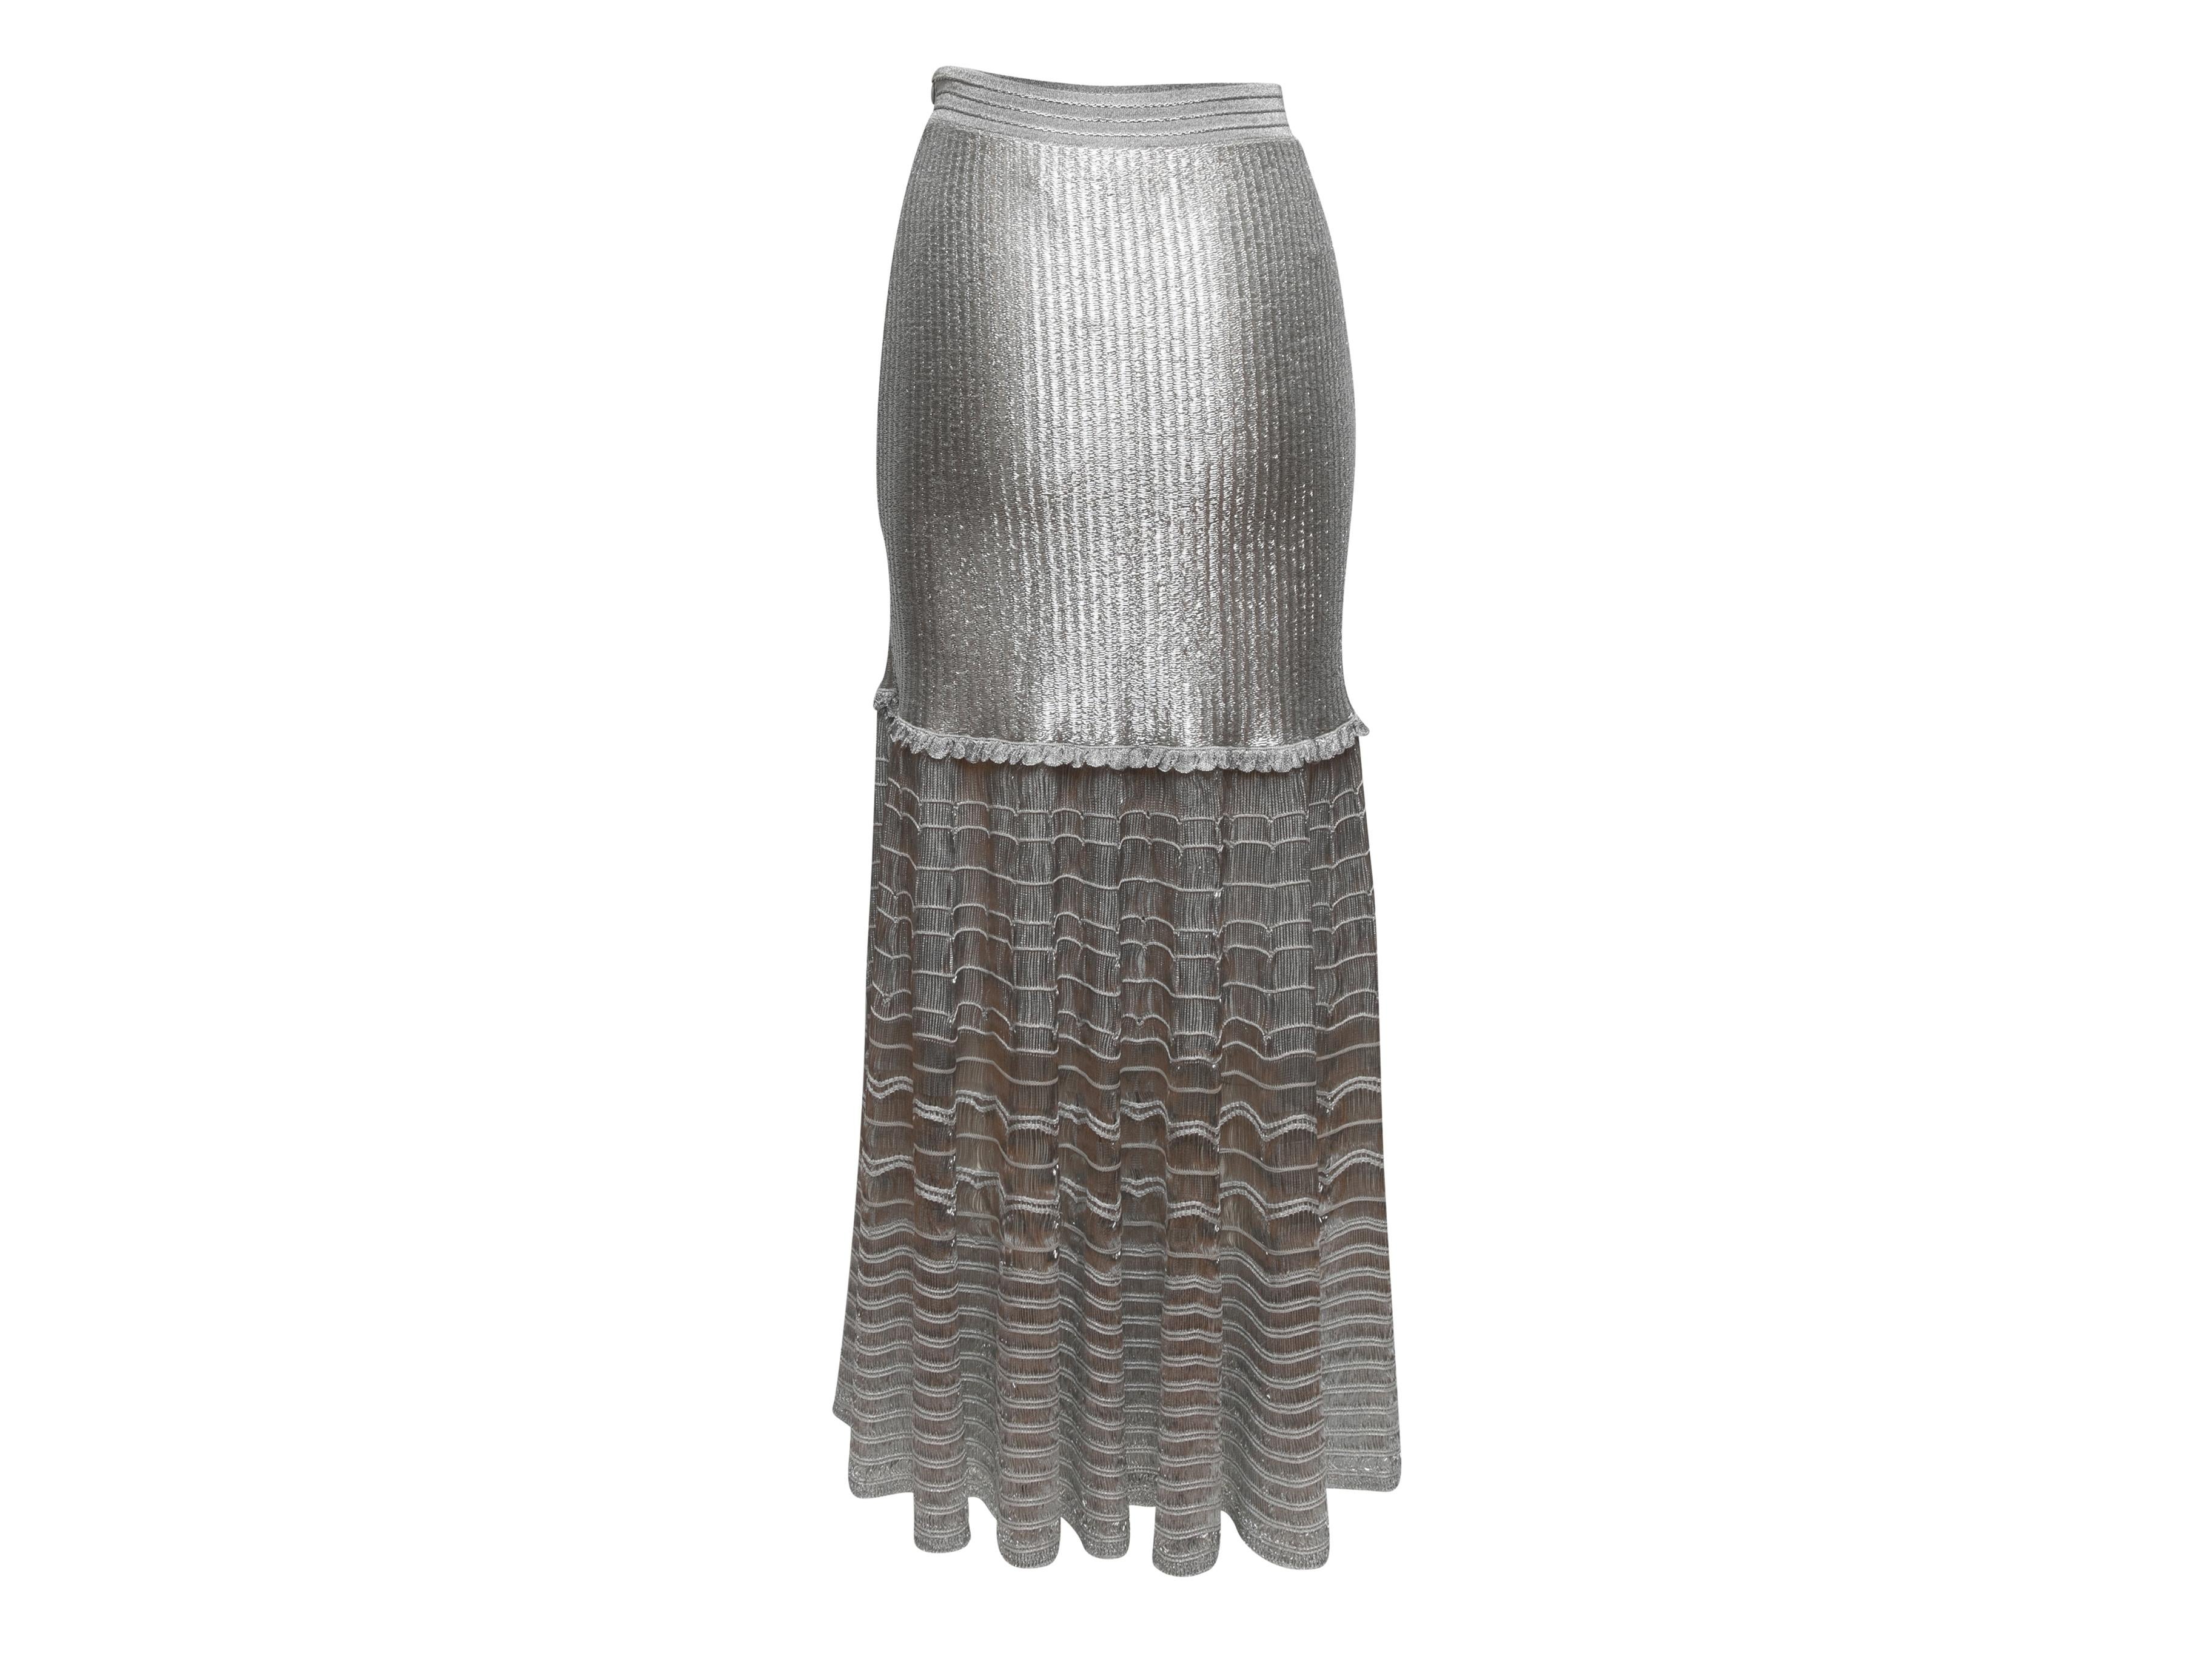 Silver metallic knit maxi skirt by Alexander McQueen. Stretch waist. 26